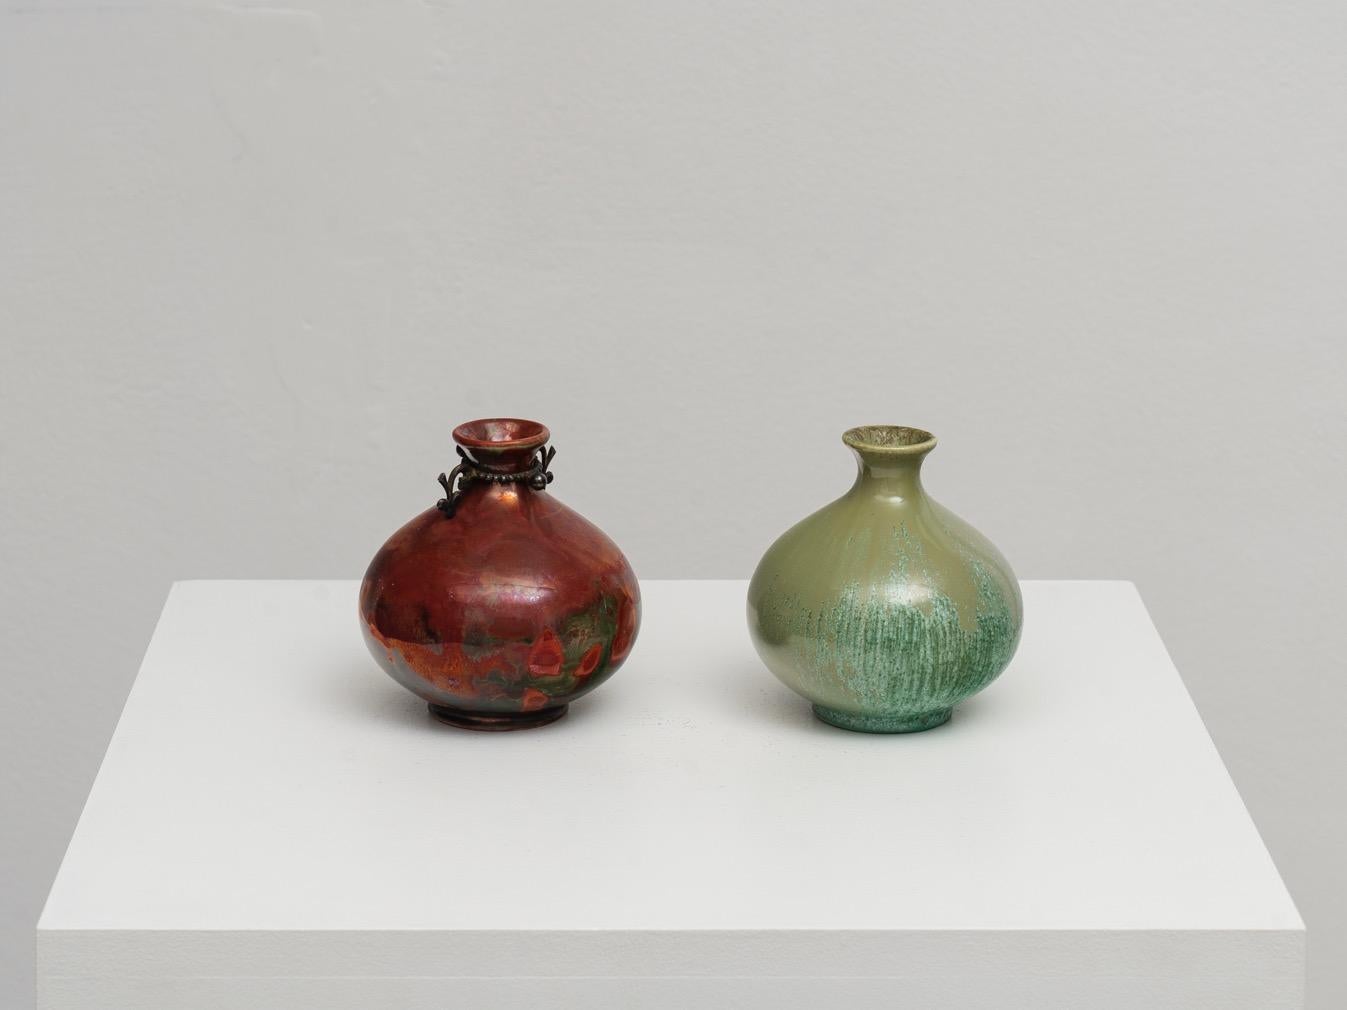 Charmante et décorative paire de petits vases du maître italien de la céramique Guido Andloviz (souvent aussi orthographié Andlovitz) pour A.C.I. Laveno. L'œuvre d'Andloviz pour A.C.I. I+I. est souvent mise en parallèle avec celle de Gio Ponti pour